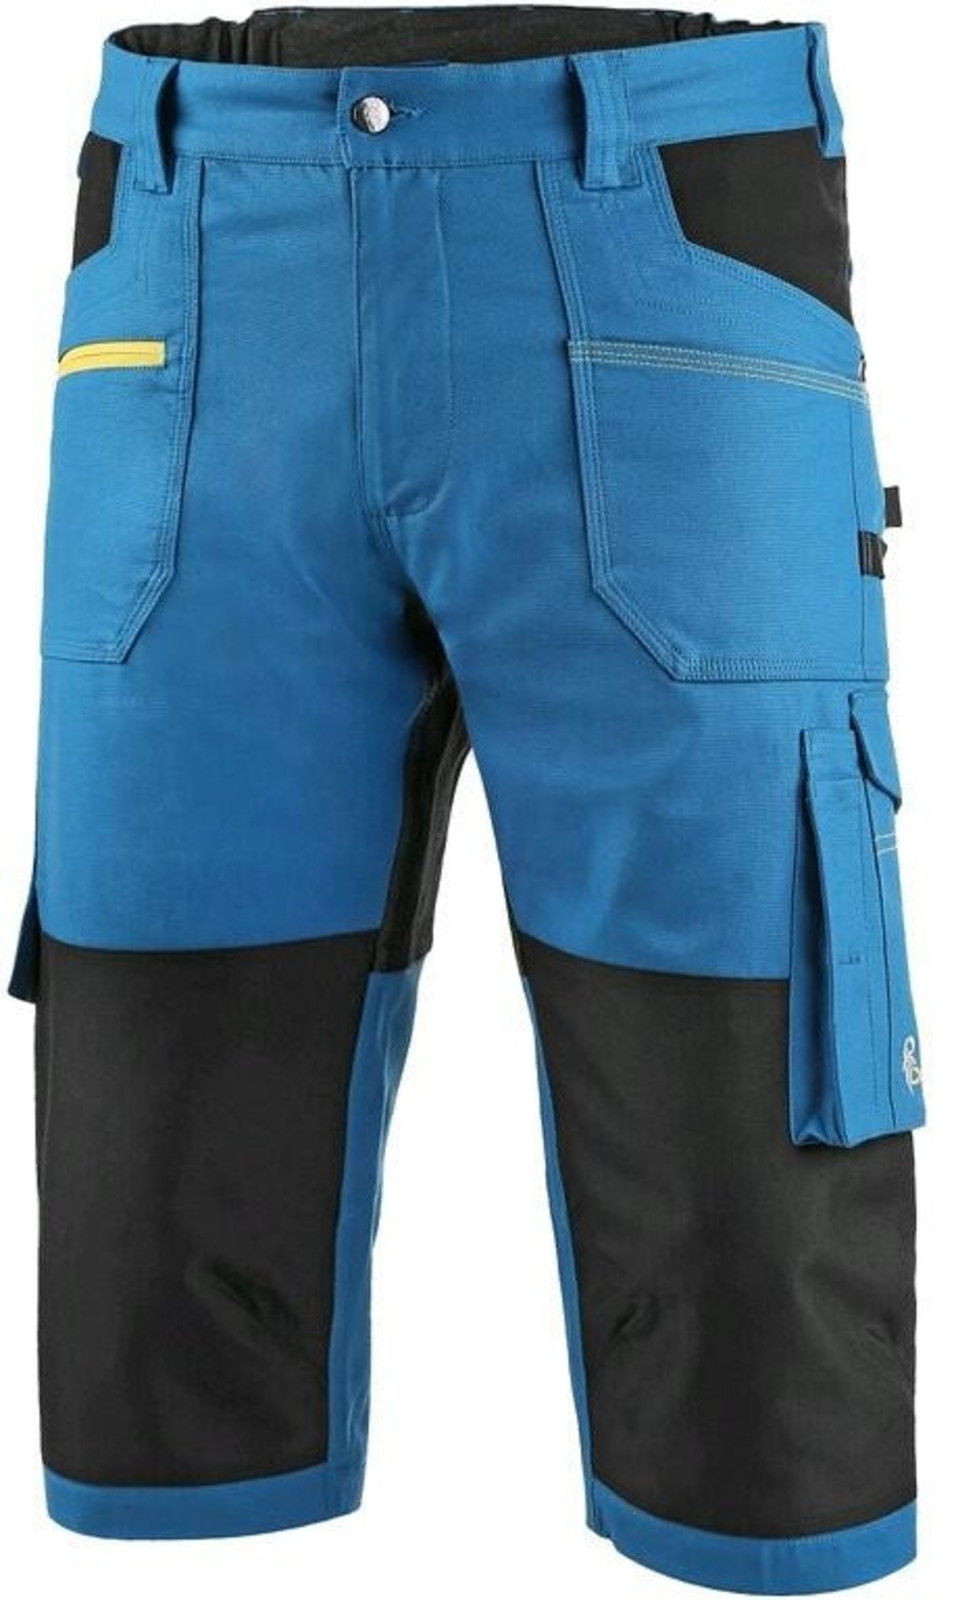 Pánske strečové montérkové 3/4 nohavice CXS Stretch - veľkosť: 54, farba: modrá/čierna